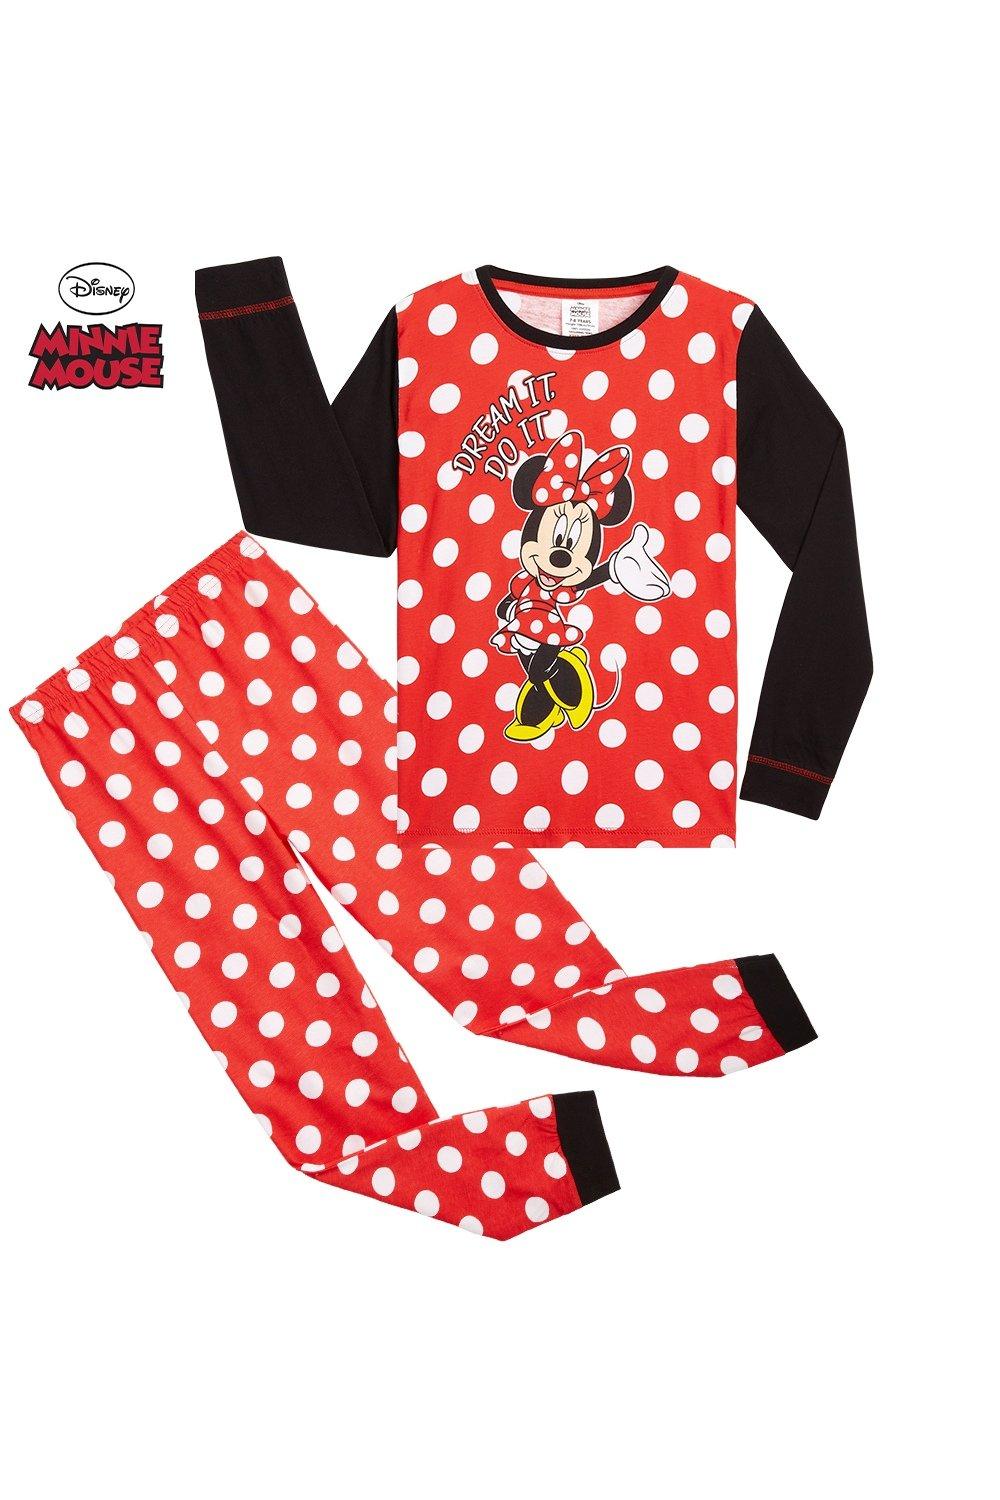 Пижамный комплект Минни Маус Disney, красный кармашки настенные модница минни маус 45 х 18 см disney